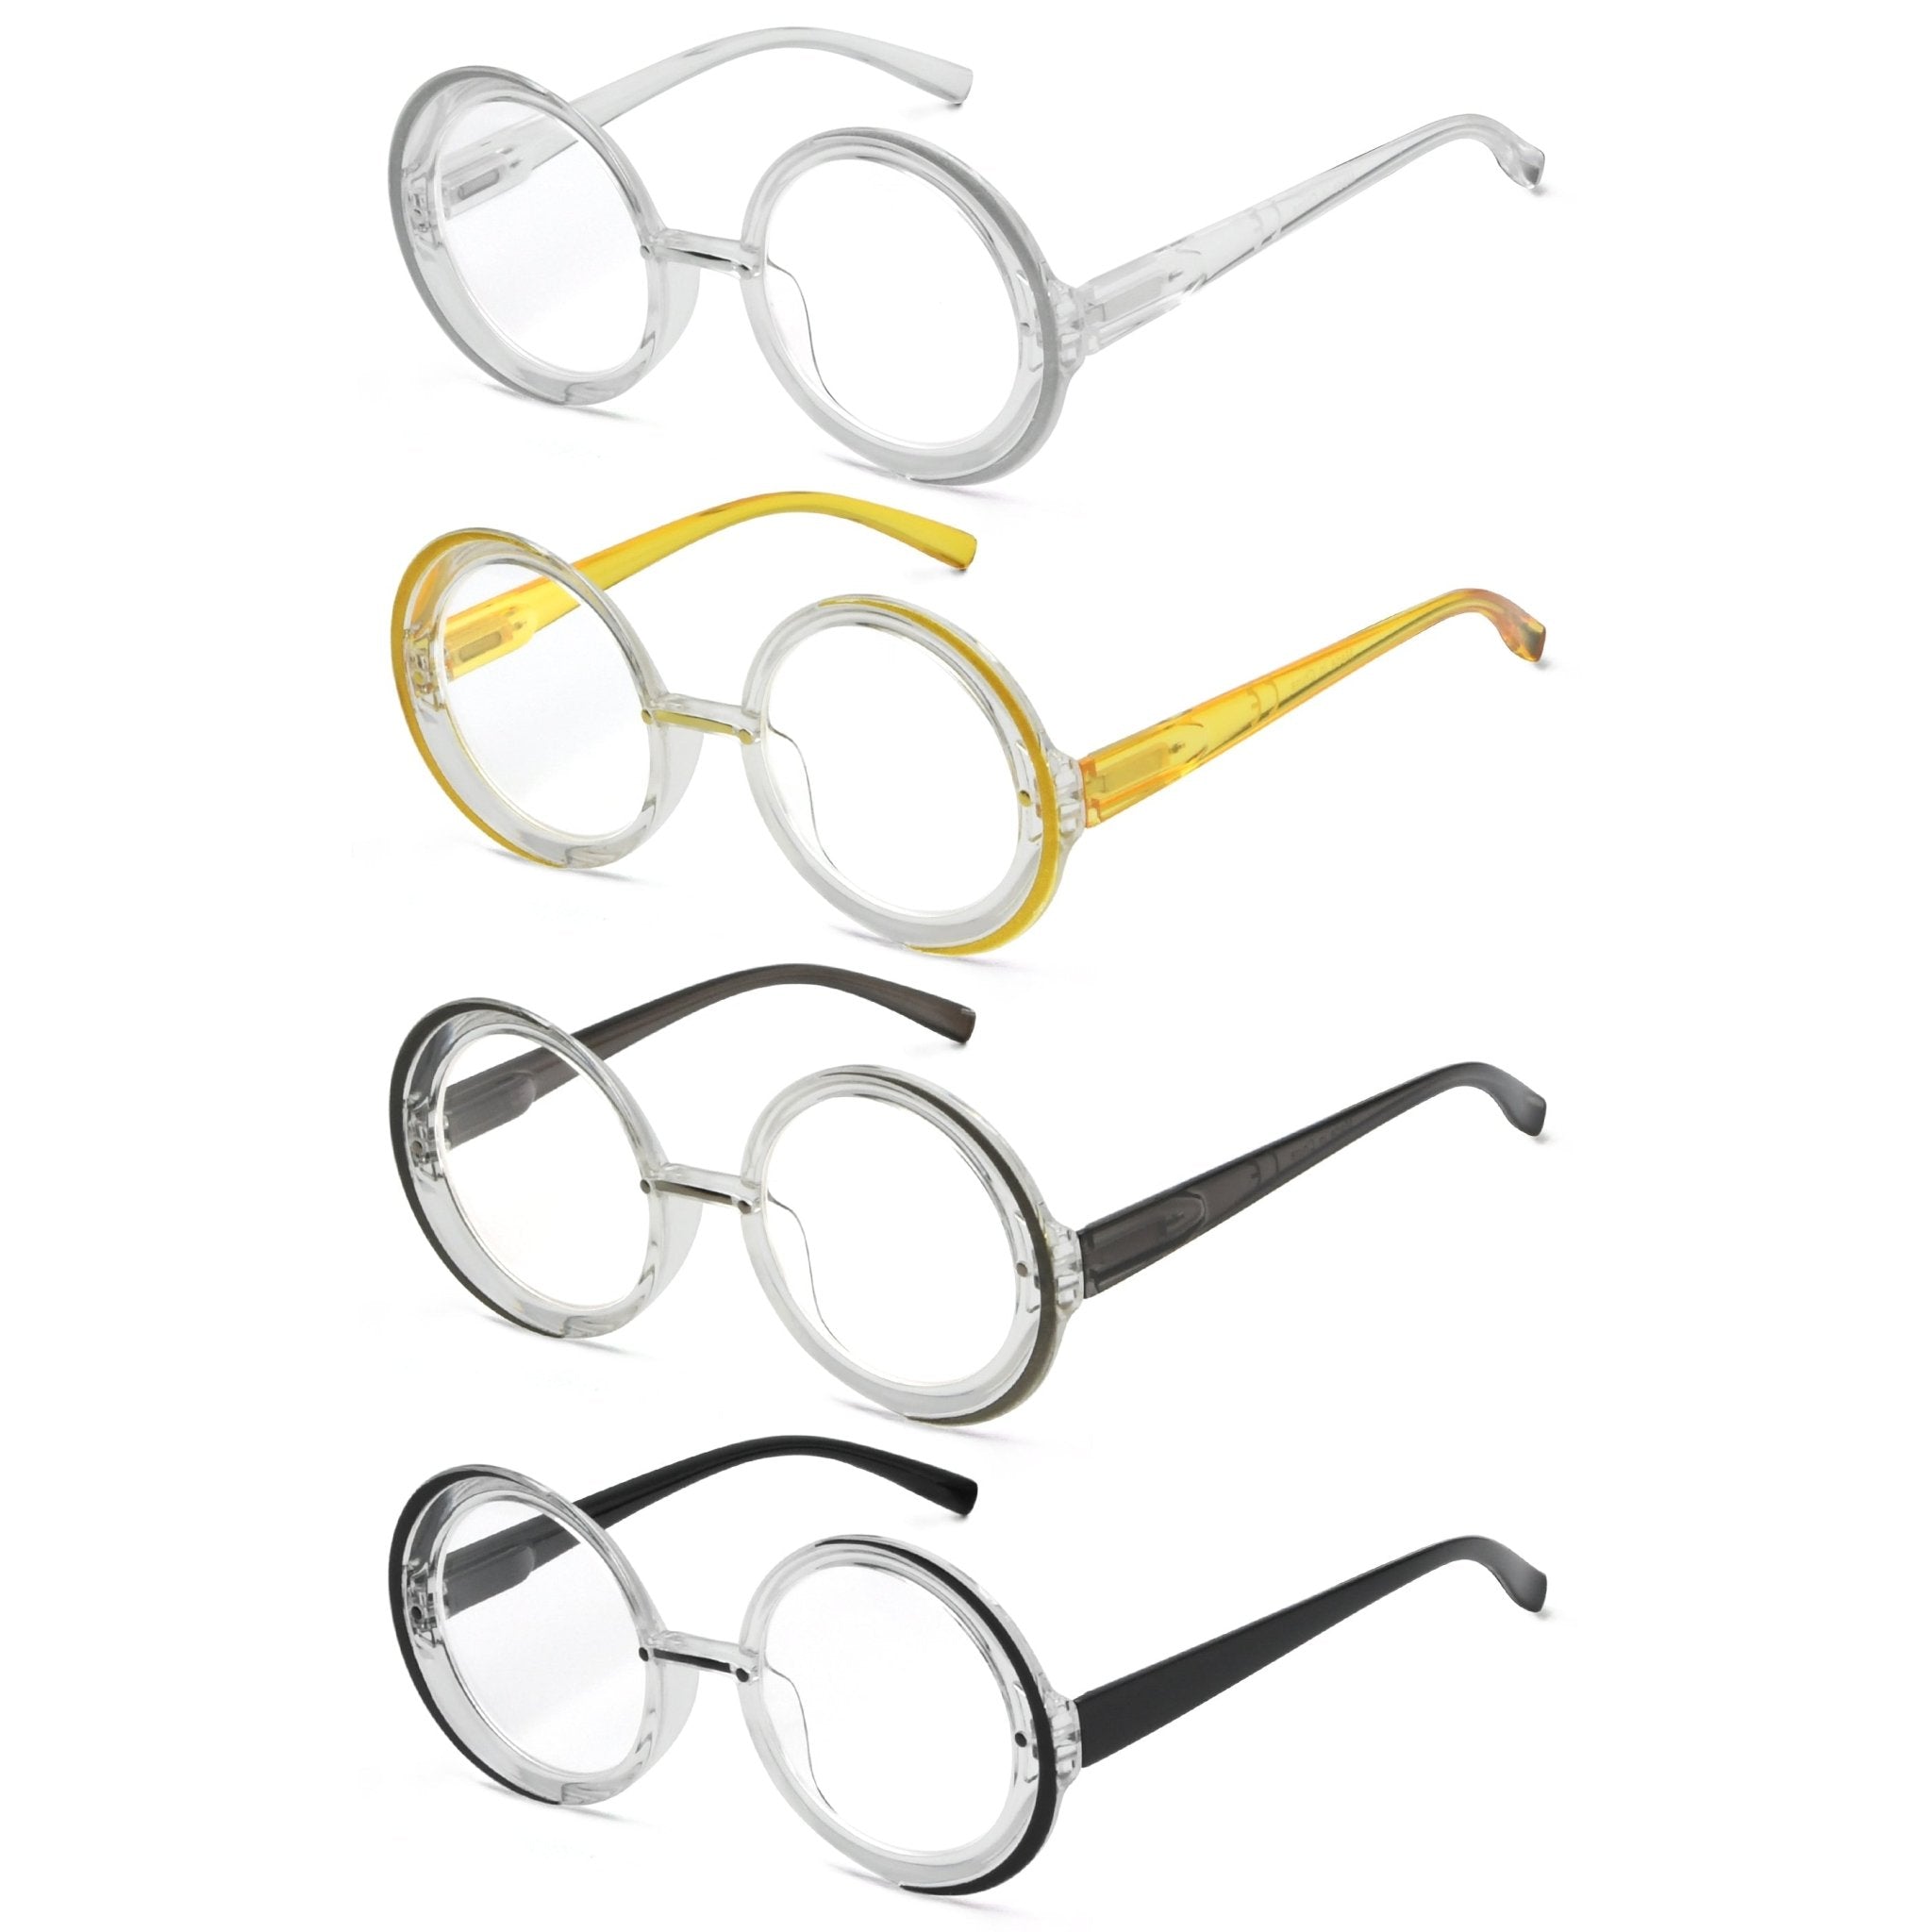 Reading Glasses Fashionable Design For Women R2005n 4pack